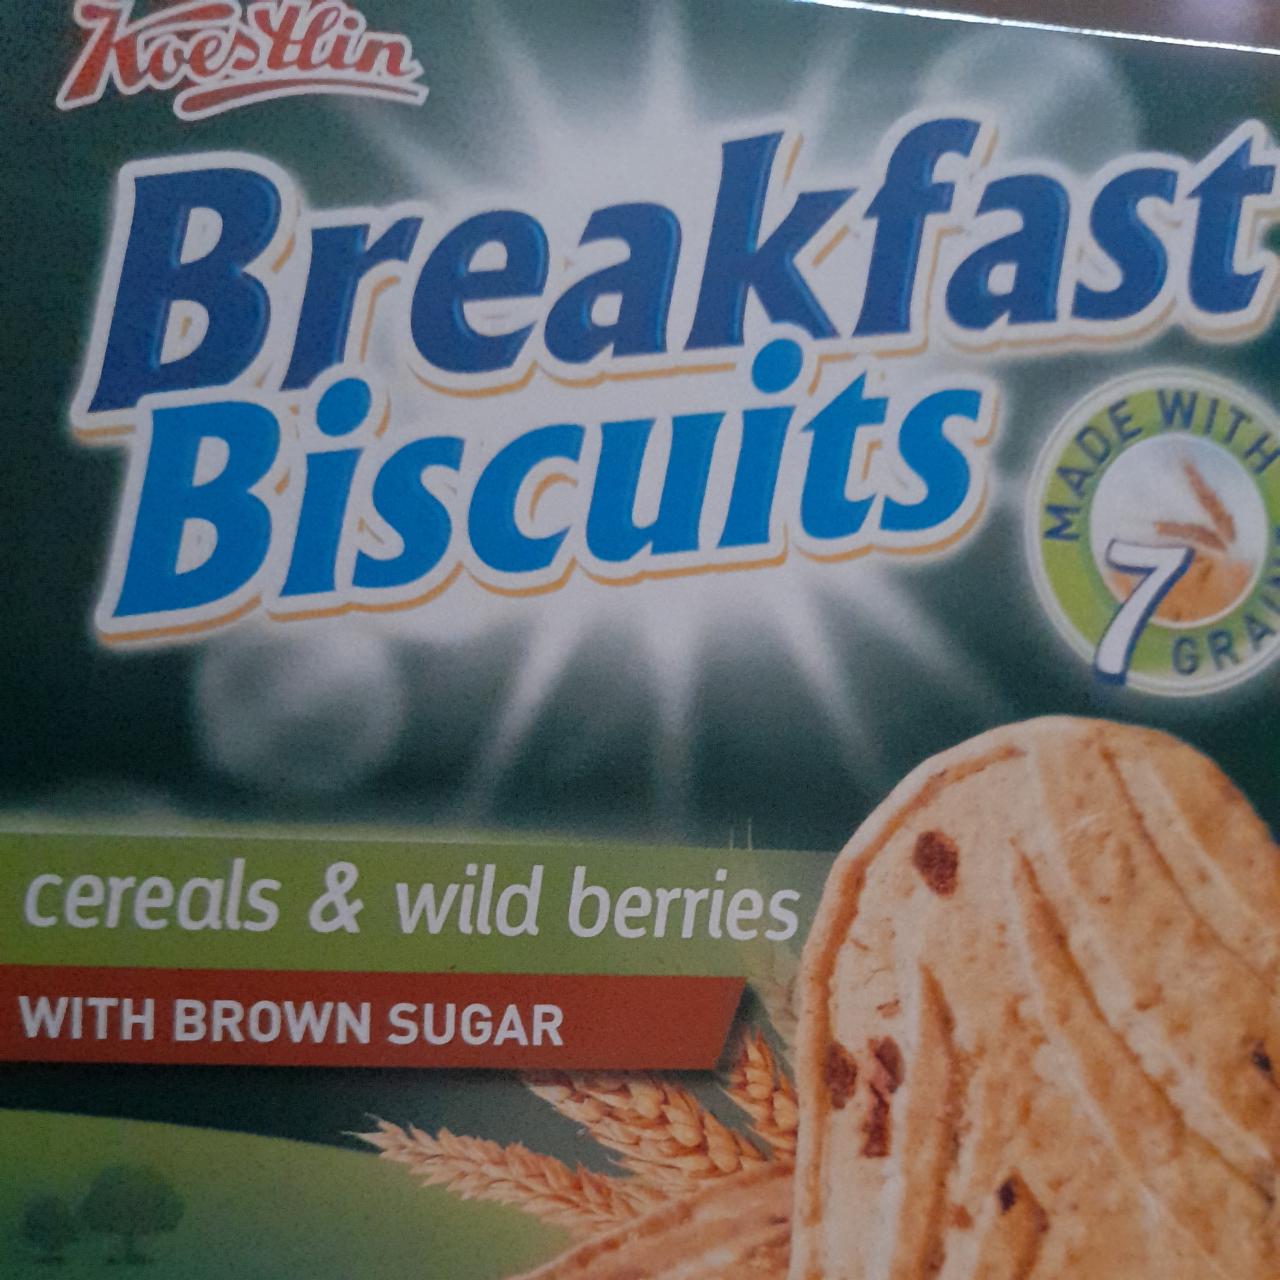 Fotografie - Breakfast biscuits Cereals & Wild Berries Koestlin